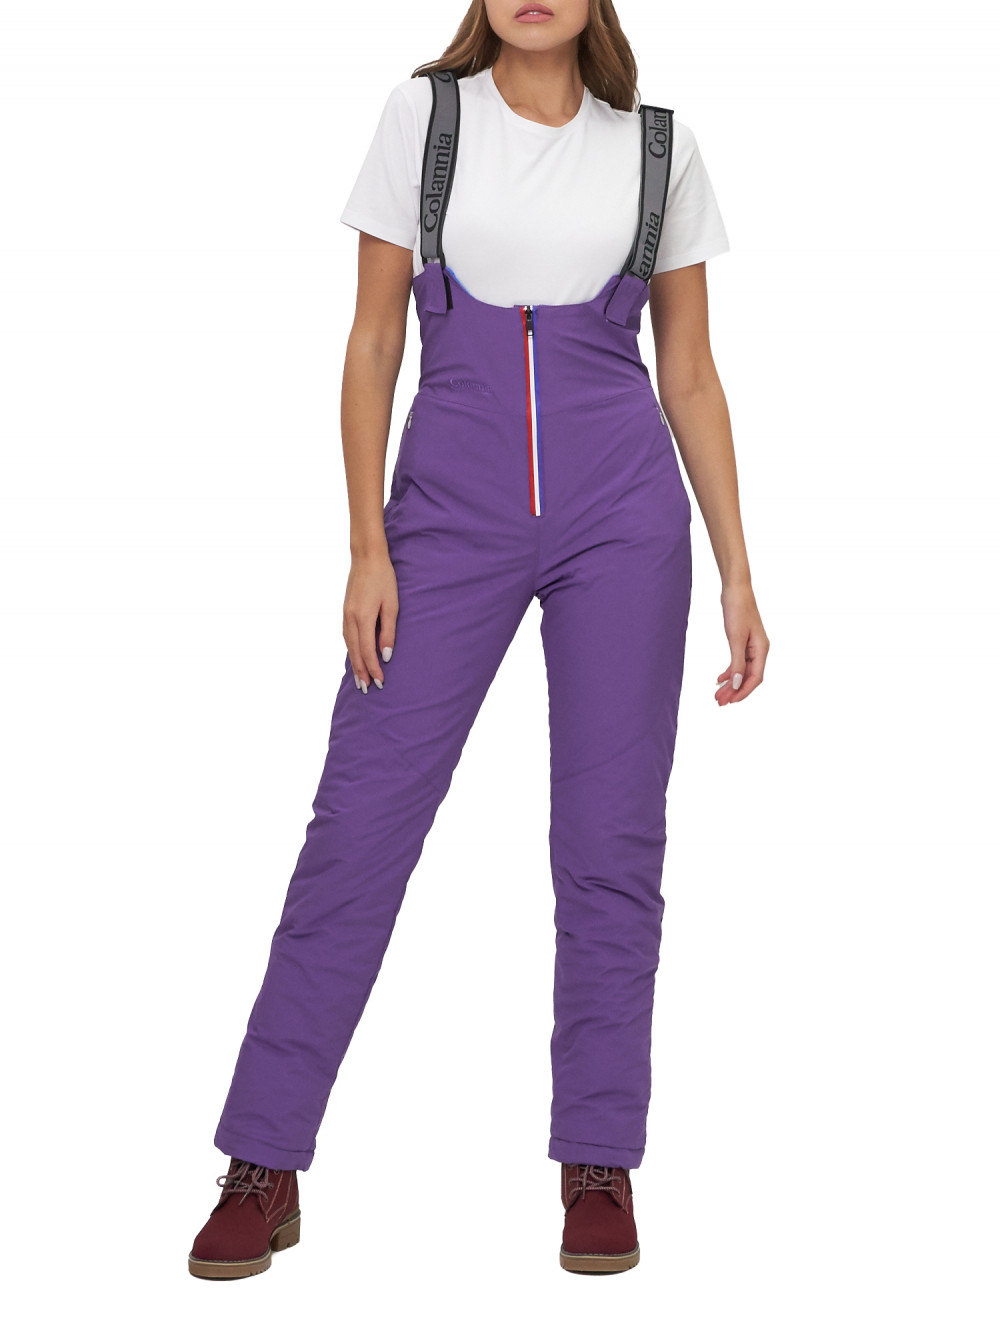 Полукомбинезон брюки горнолыжные женские AD66179F фиолетового цвета, 48